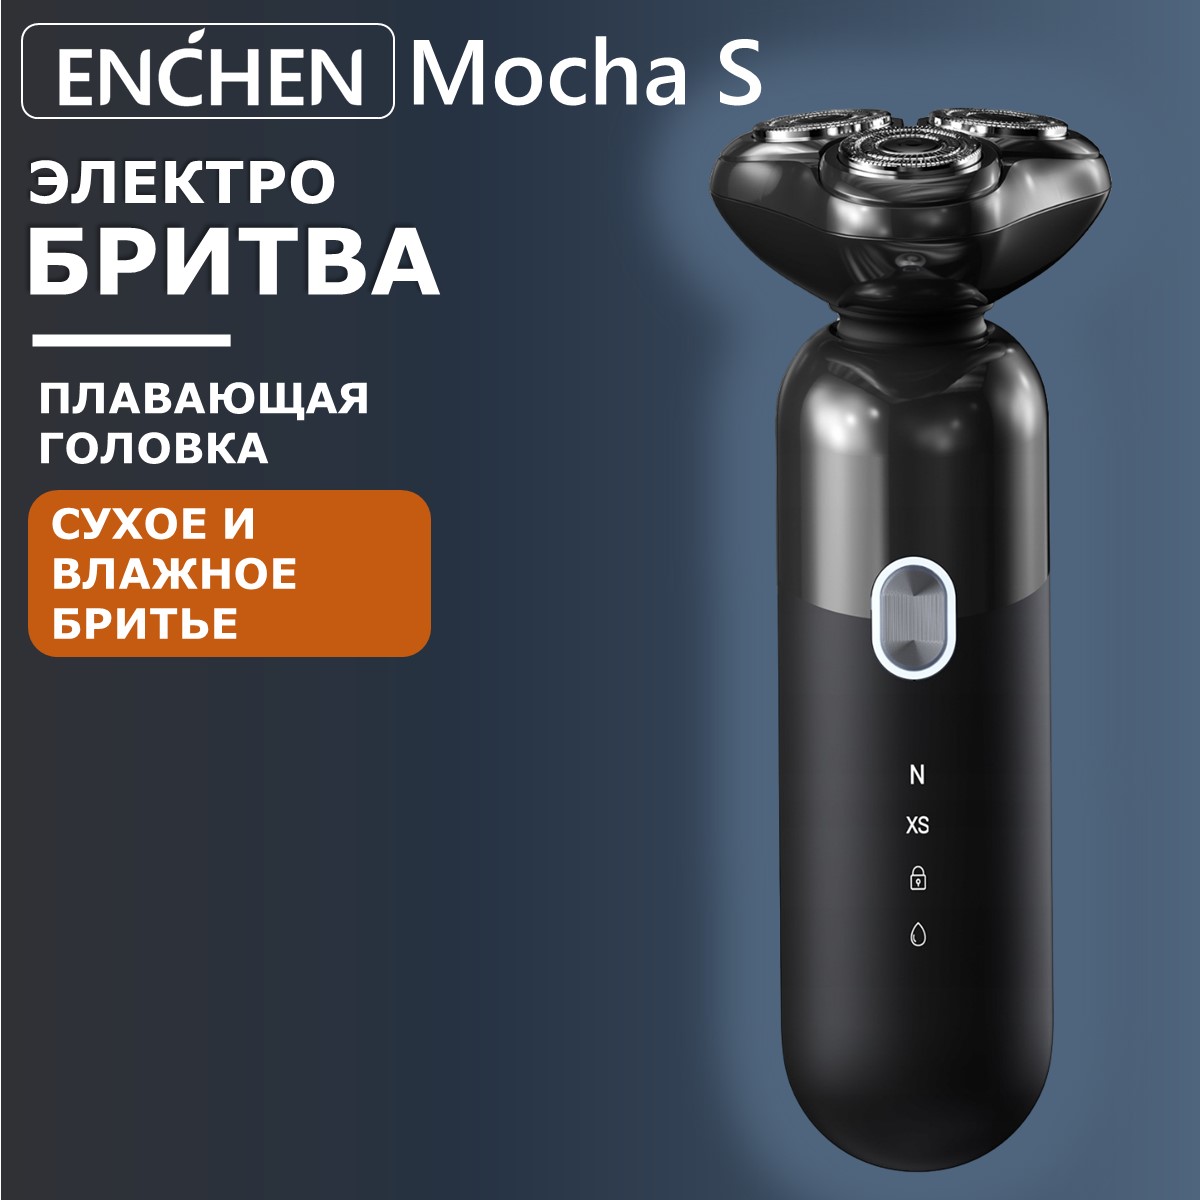 Электробритва Enchen Mocha-S, купить в Москве, цены в интернет-магазинах на Мегамаркет